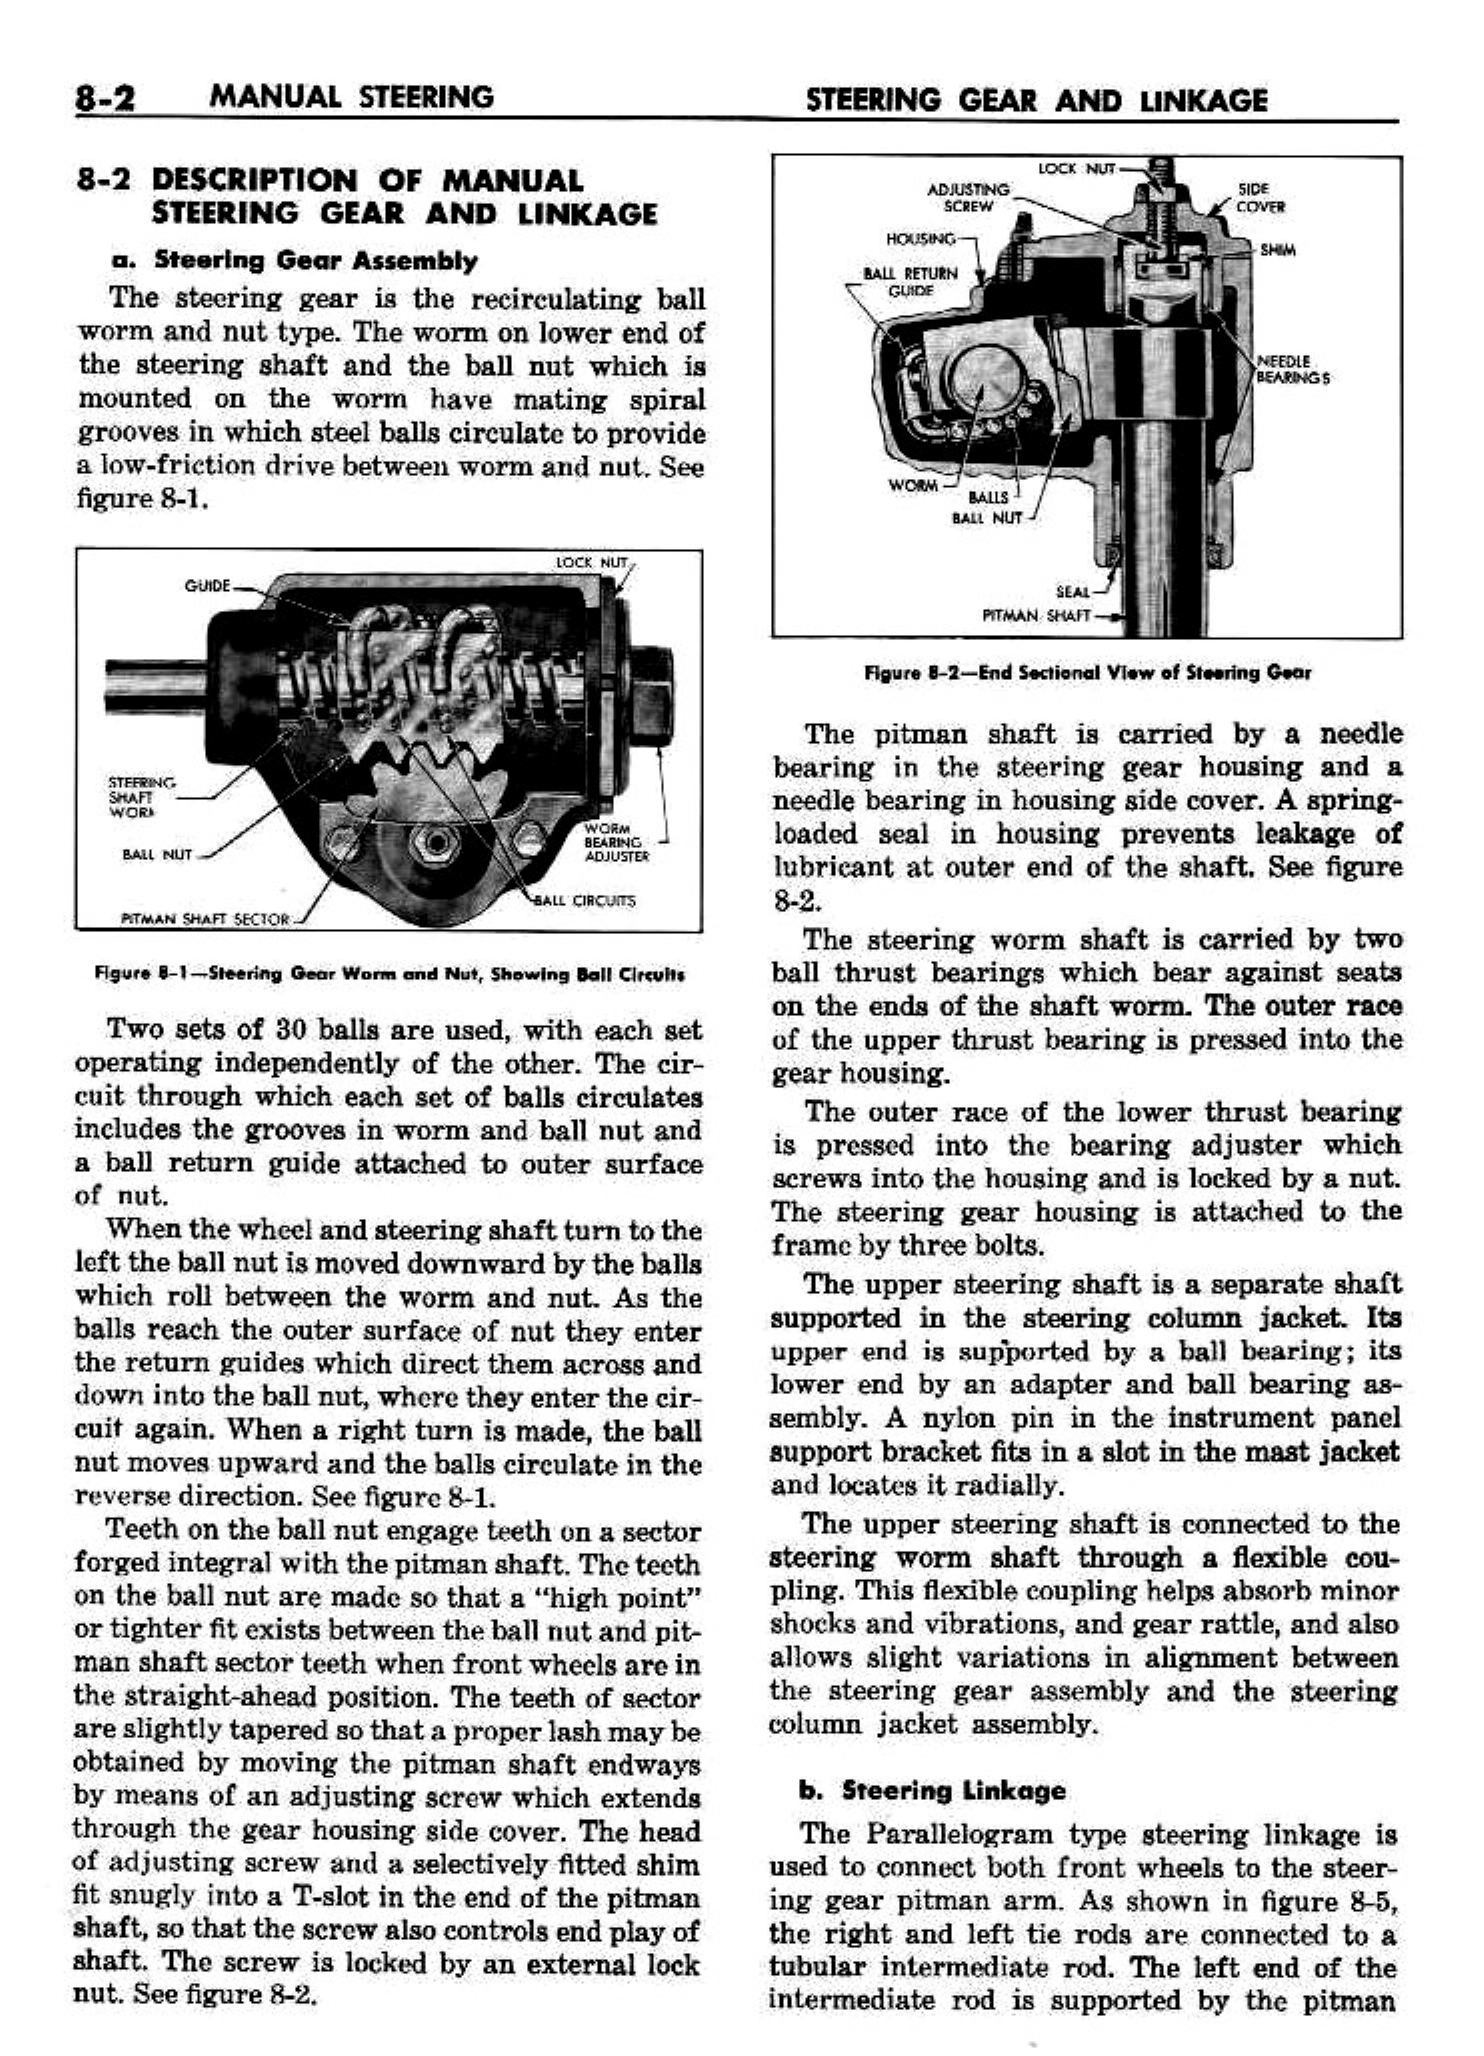 n_09 1958 Buick Shop Manual - Steering_2.jpg